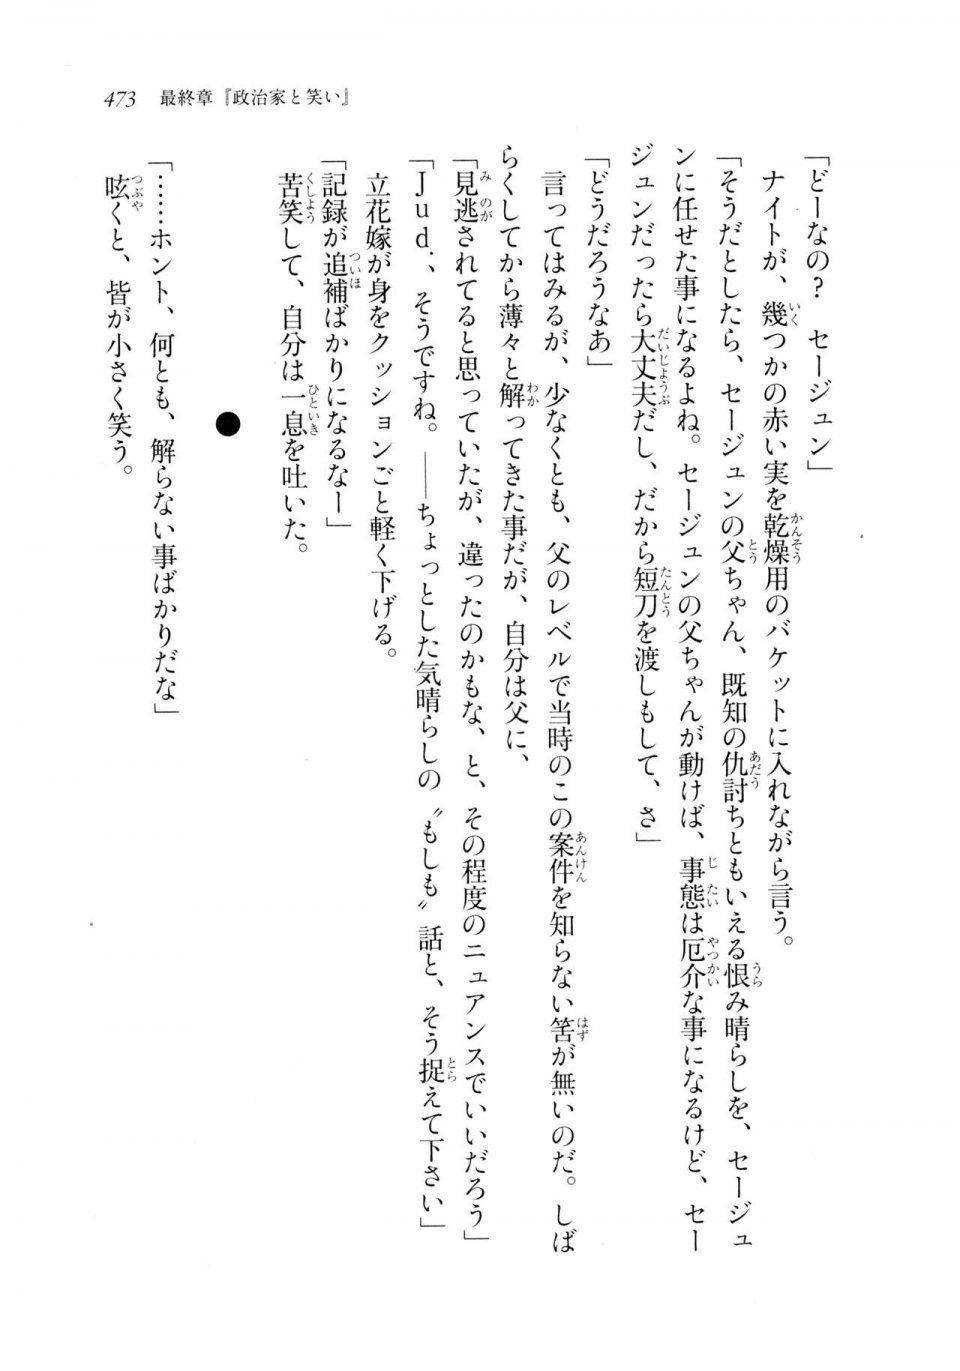 Kyoukai Senjou no Horizon LN Sidestory Vol 2 - Photo #471